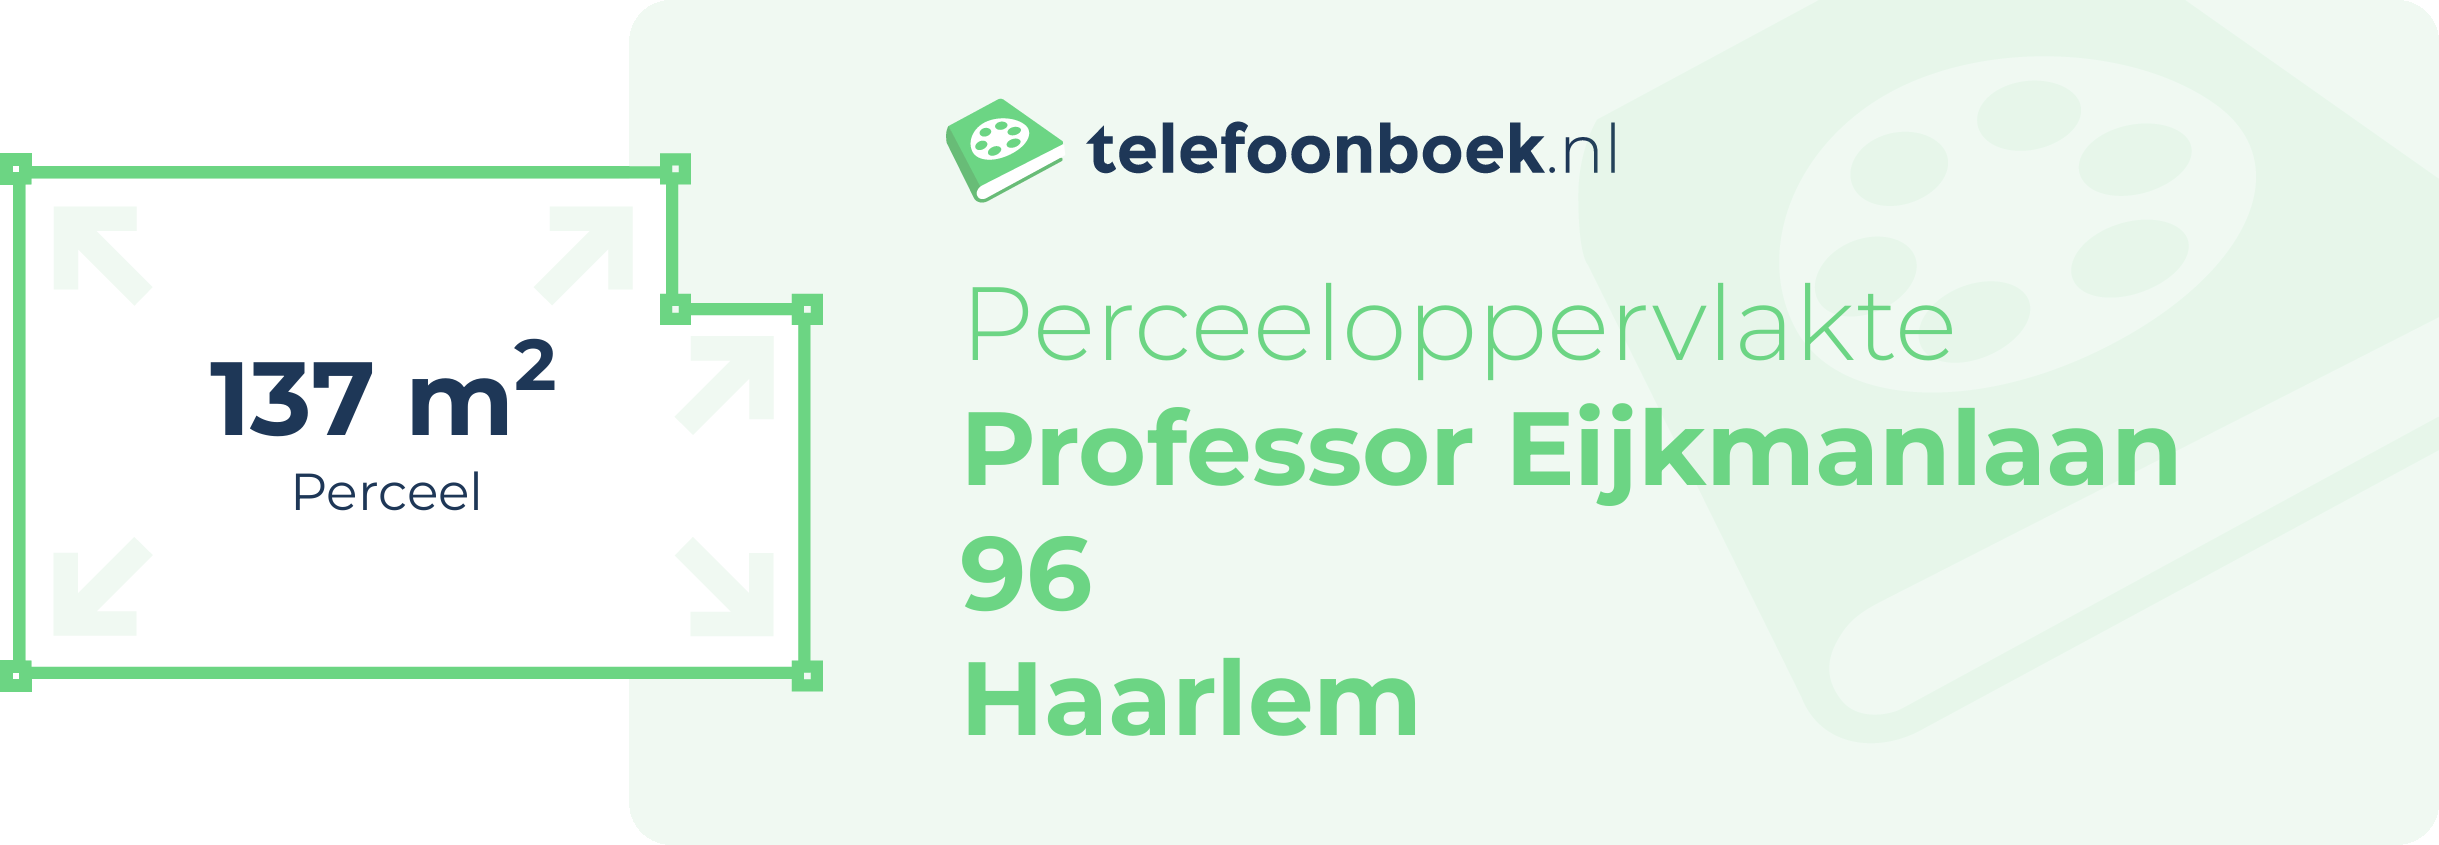 Perceeloppervlakte Professor Eijkmanlaan 96 Haarlem